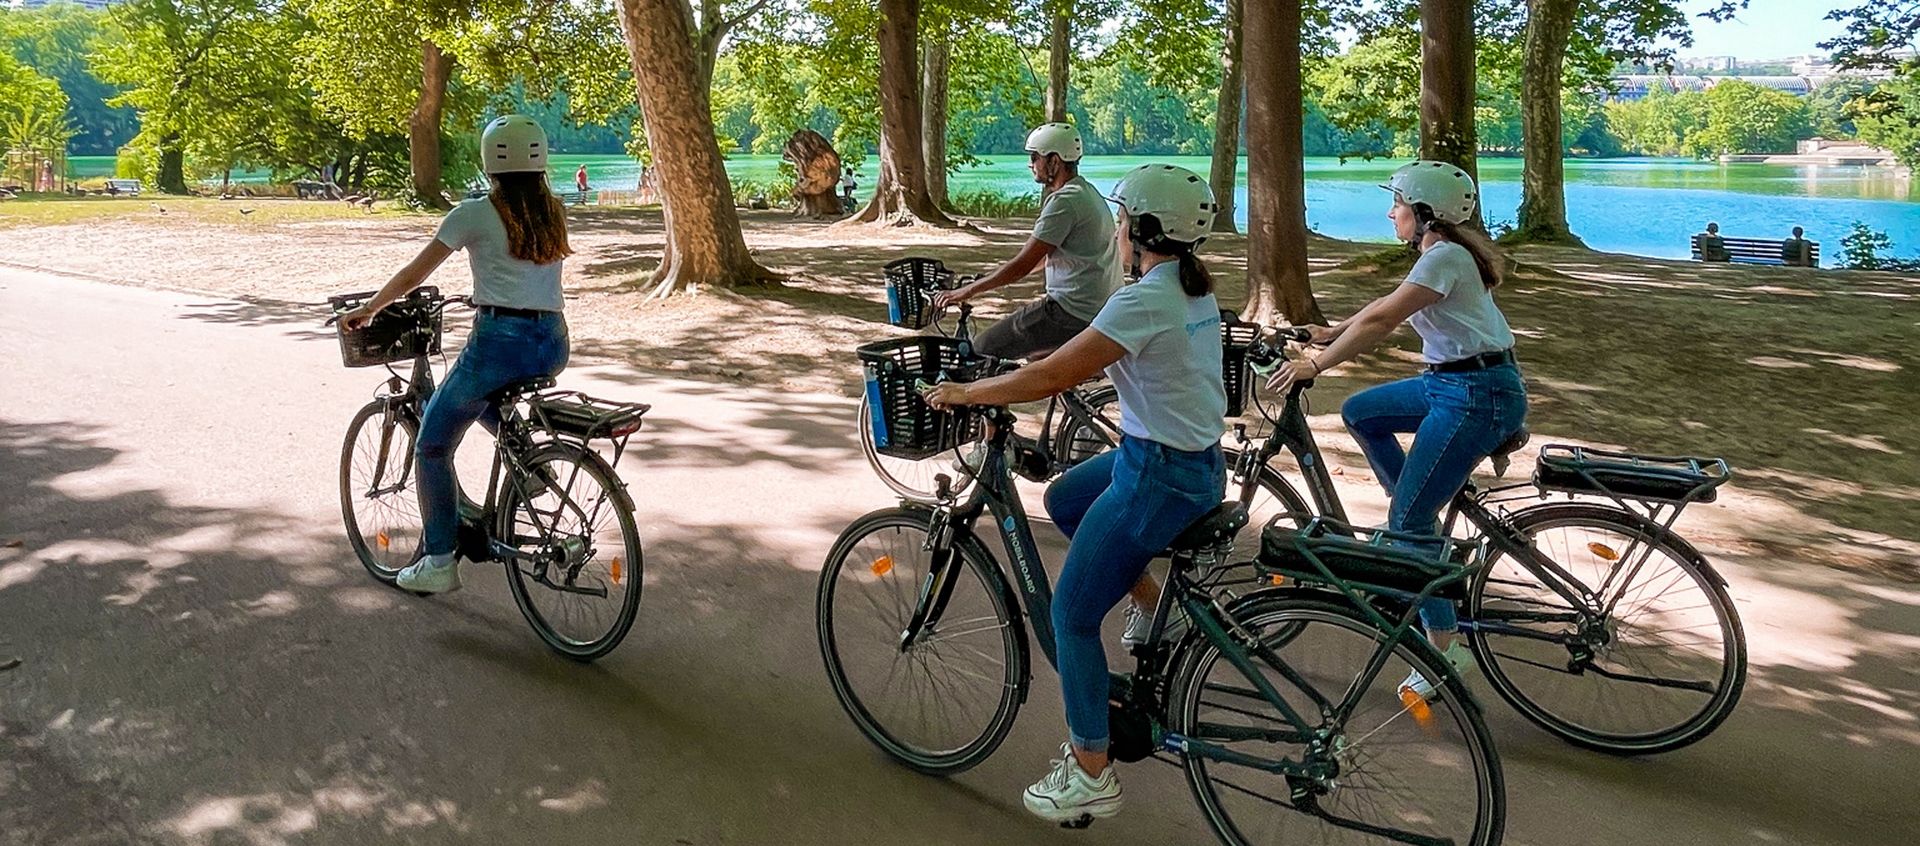 Balade à vélo au parc de la Tête d'Or - 2h